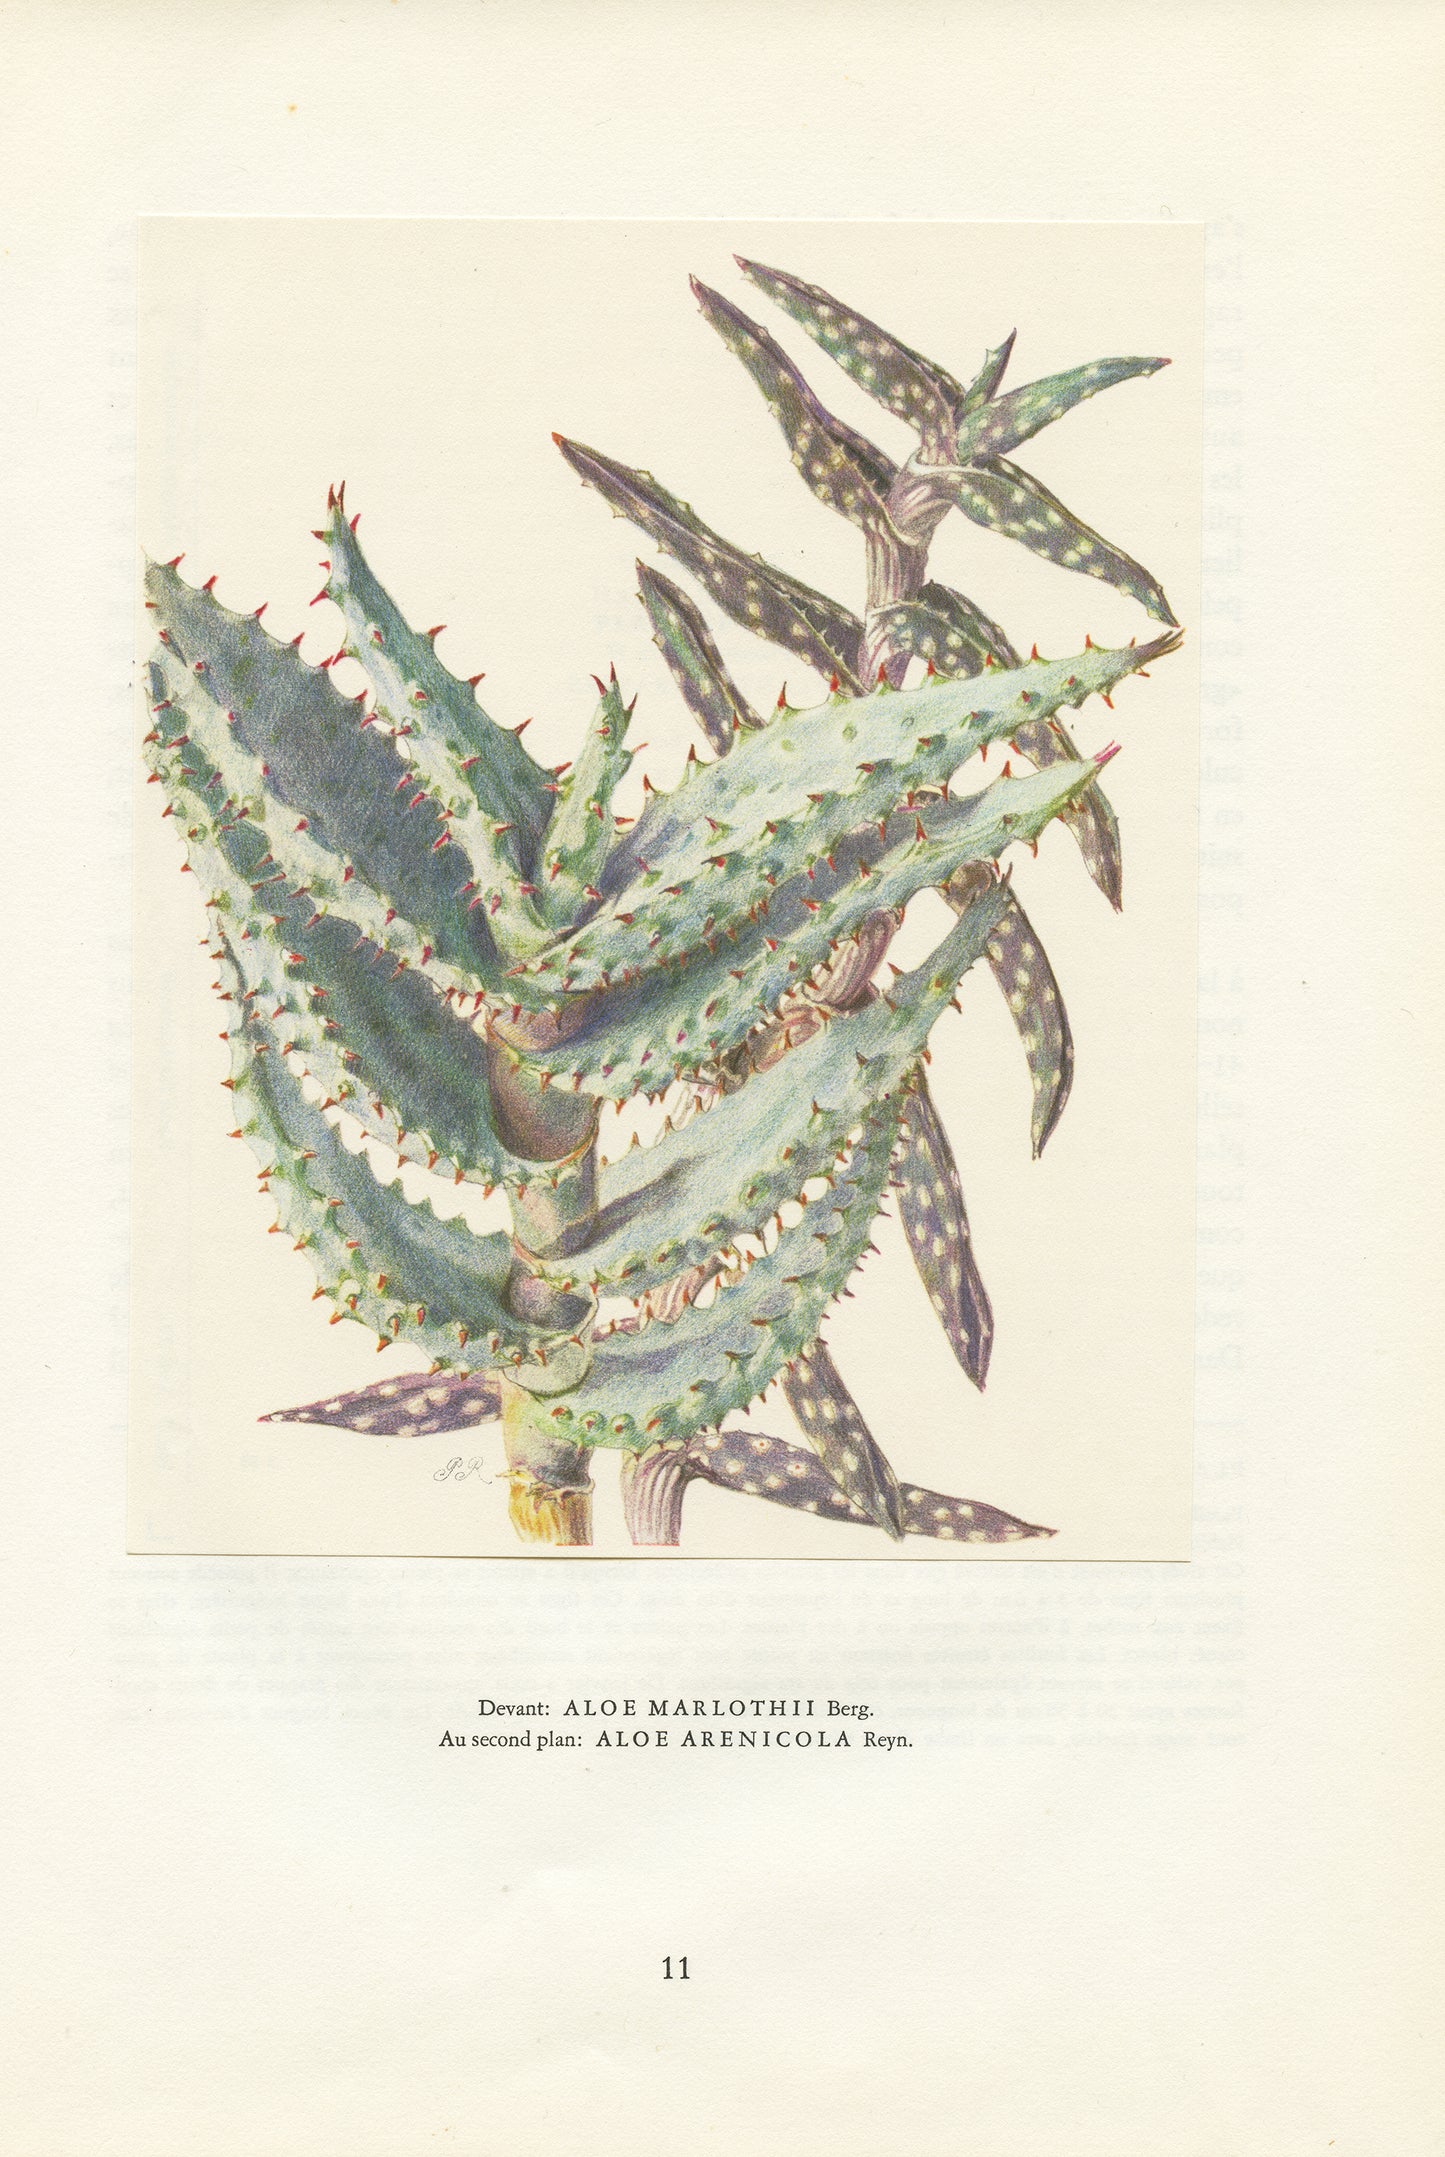 1958 Aloe Marlothii & Arenicola print